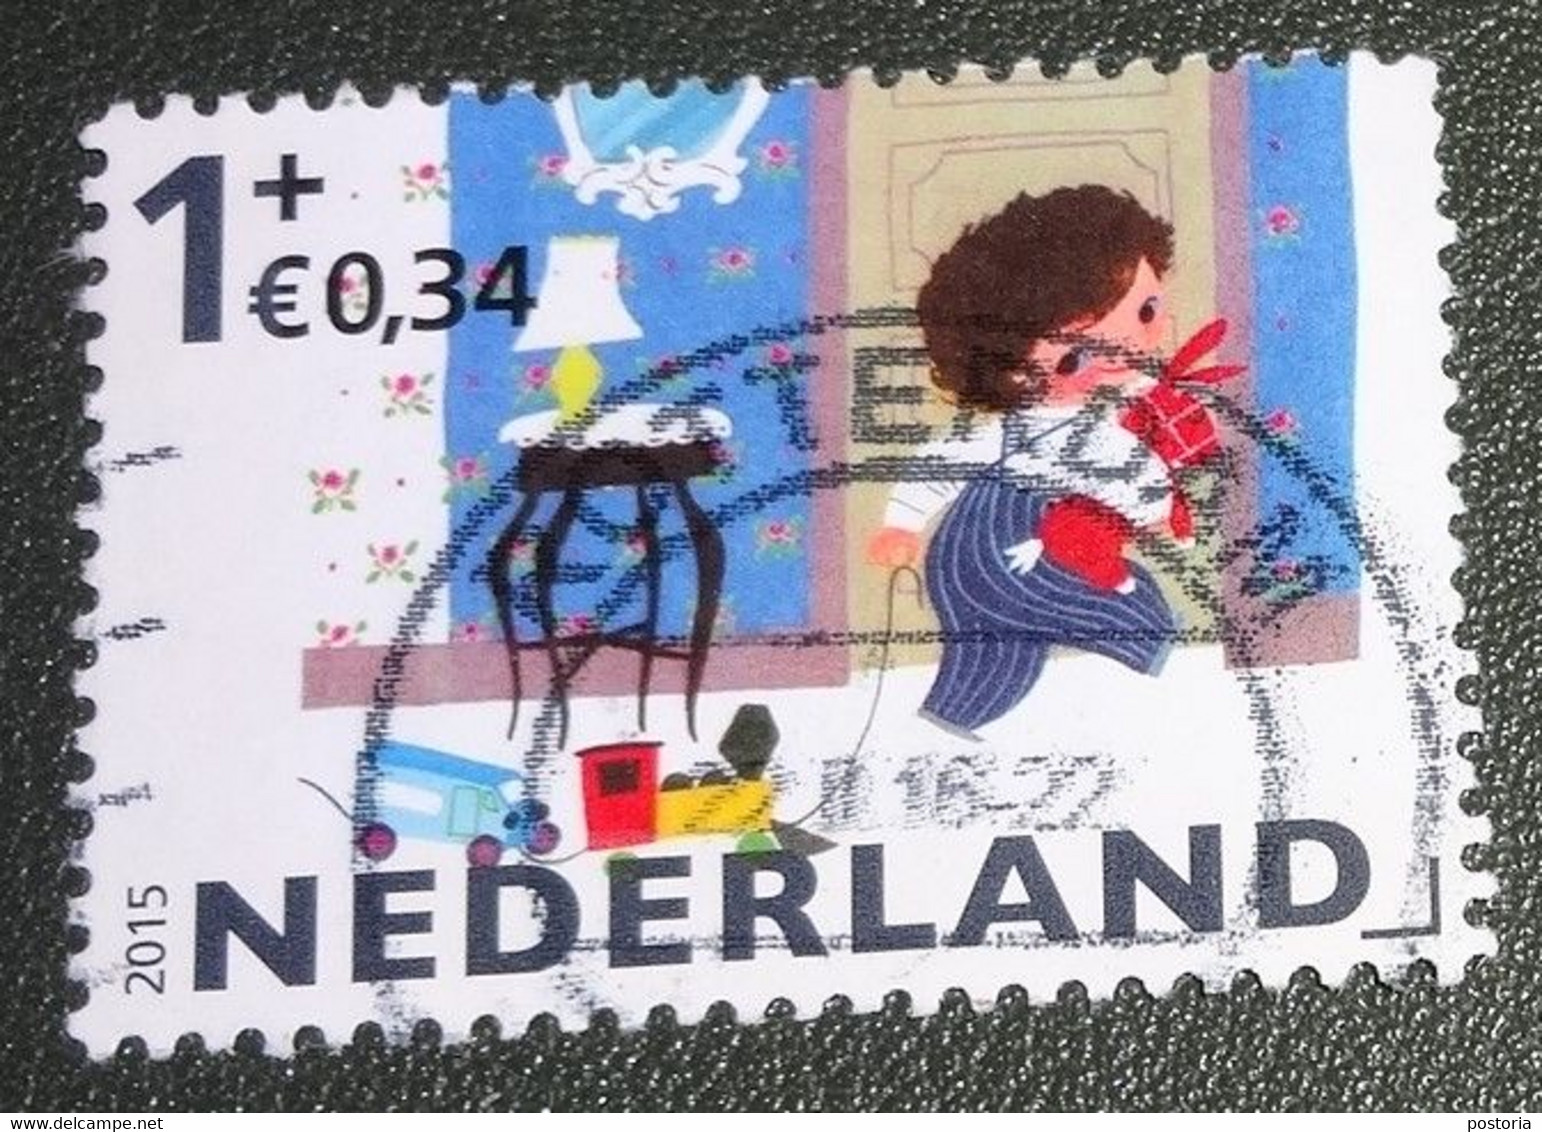 Nederland - NVPH - 3362 C - 2015 - Gebruikt - Cancelled - Kinderzegels - Kind - Speelgoed - Tafeltje - Gebruikt